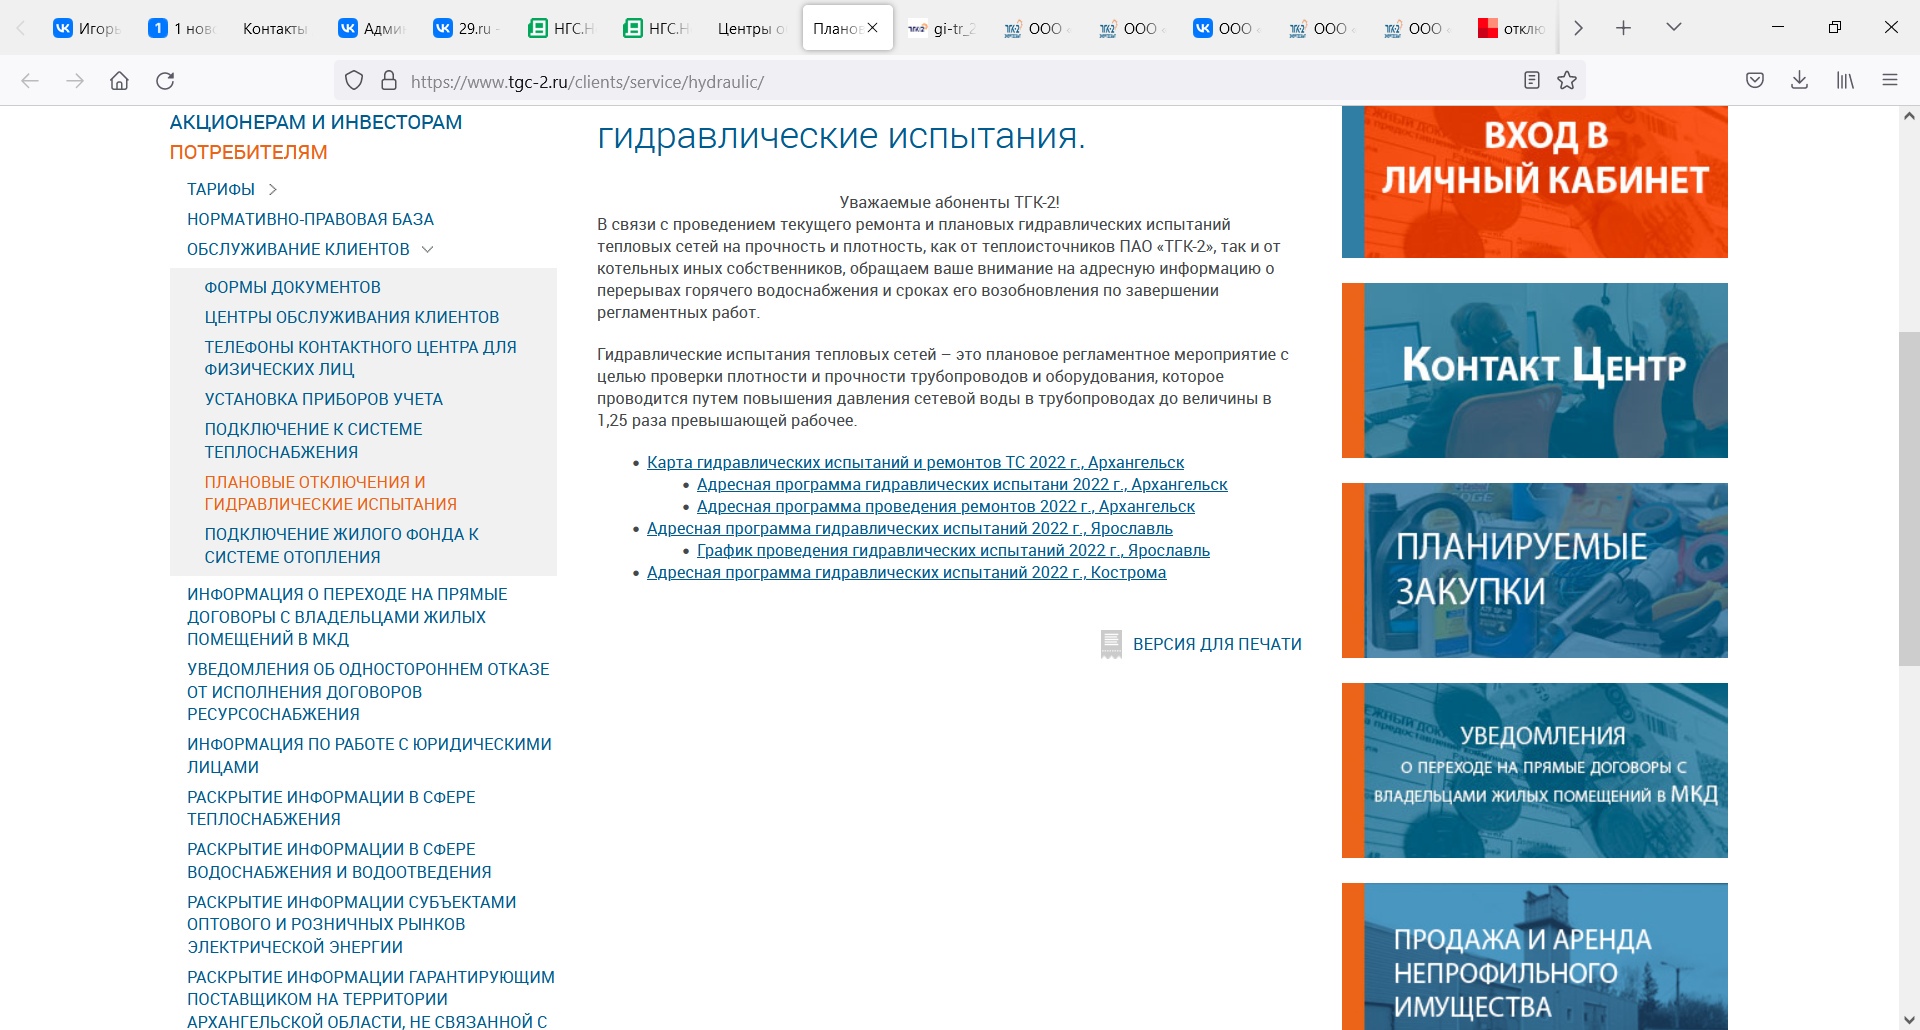 А на этом скрине видно, что на сайте были опубликованы графики на 2022 год по Архангельску